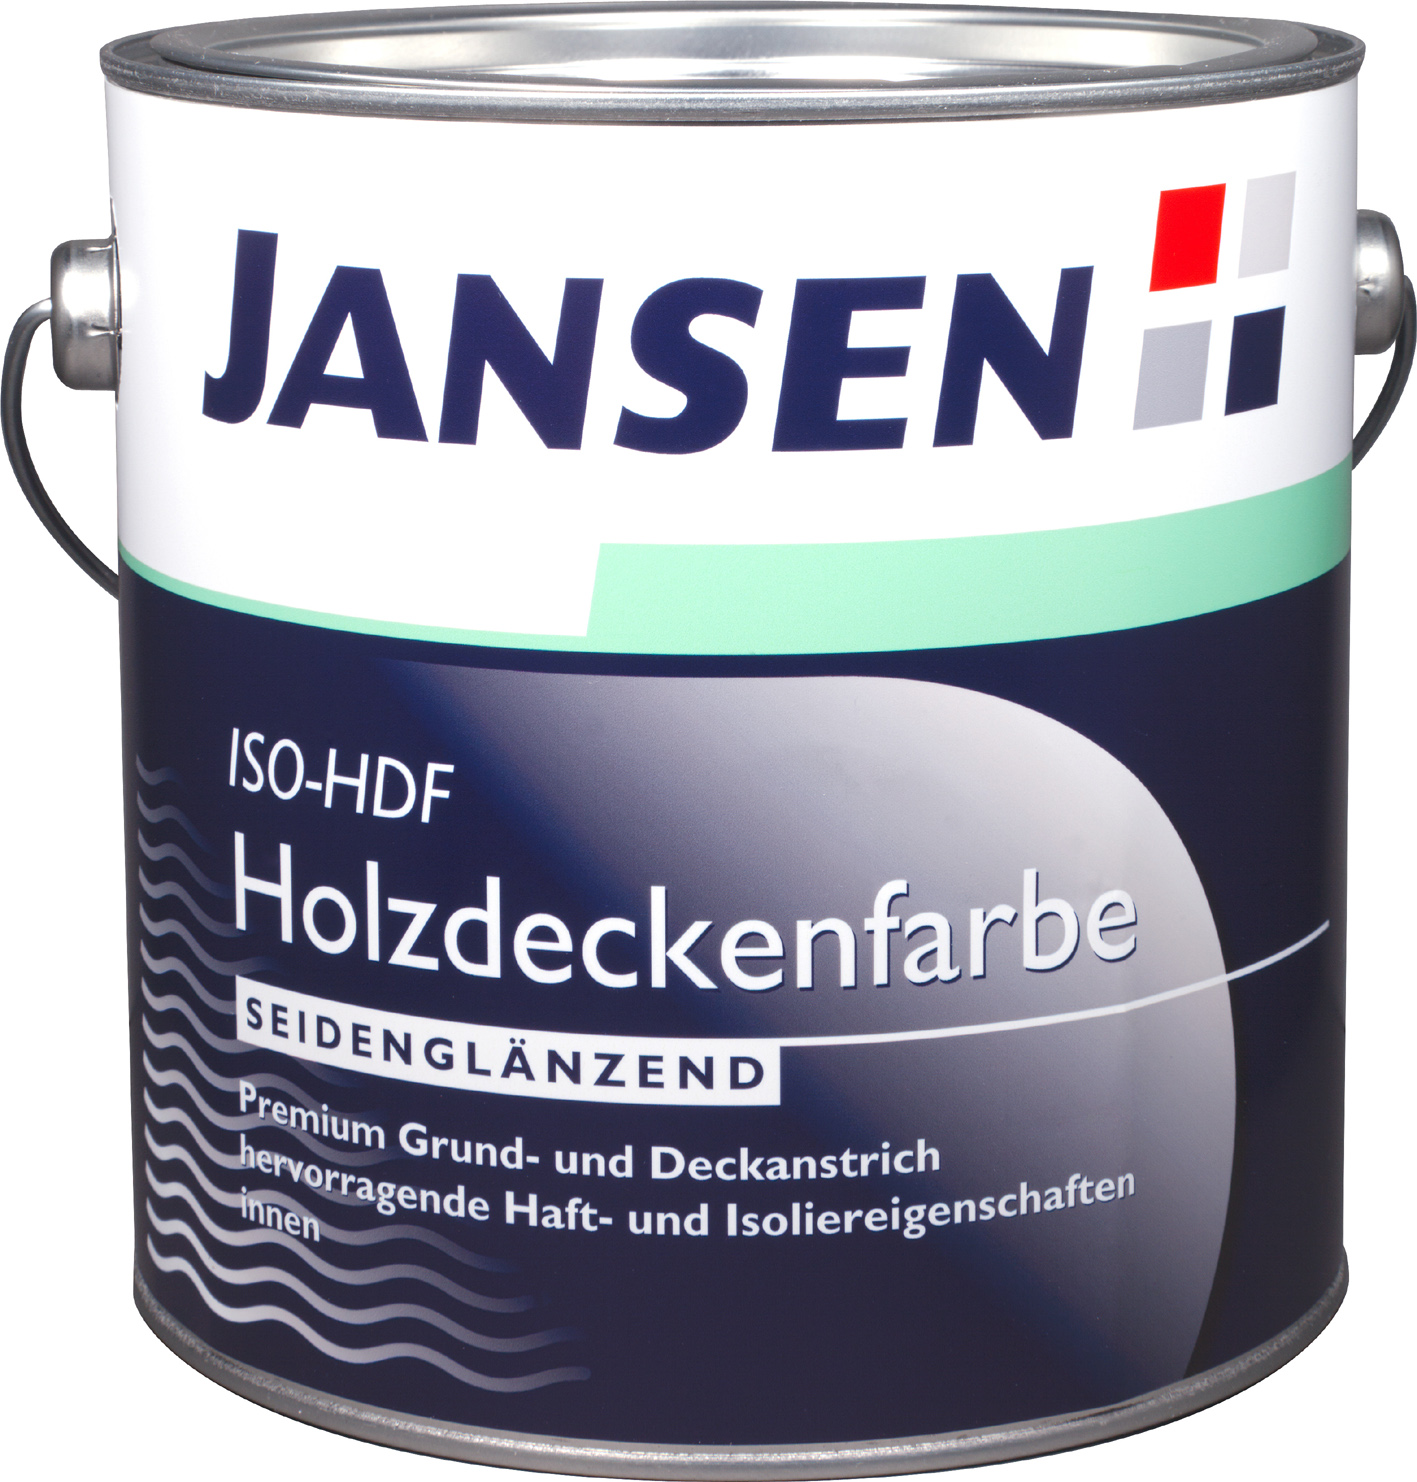 Jansen ISO-HDF Holzdeckenfarbe - Wasserbasierte Premium-Holzdeckenfarbe